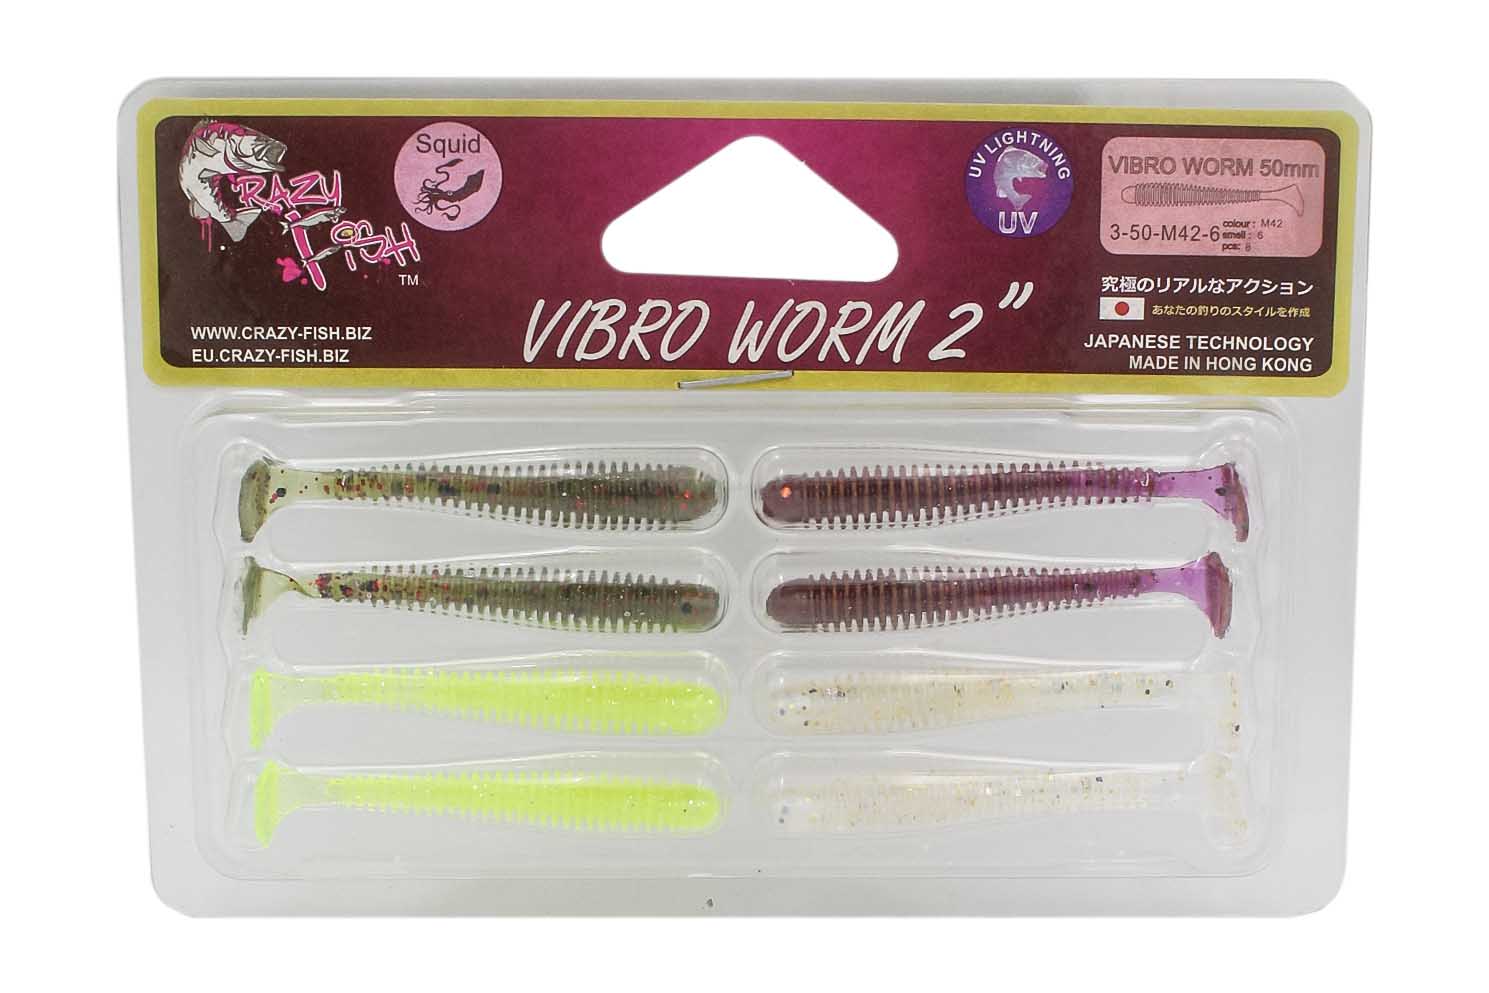 Приманка Crazy Fish Vibro worm 2" 3-50-M42-6 - фото 1